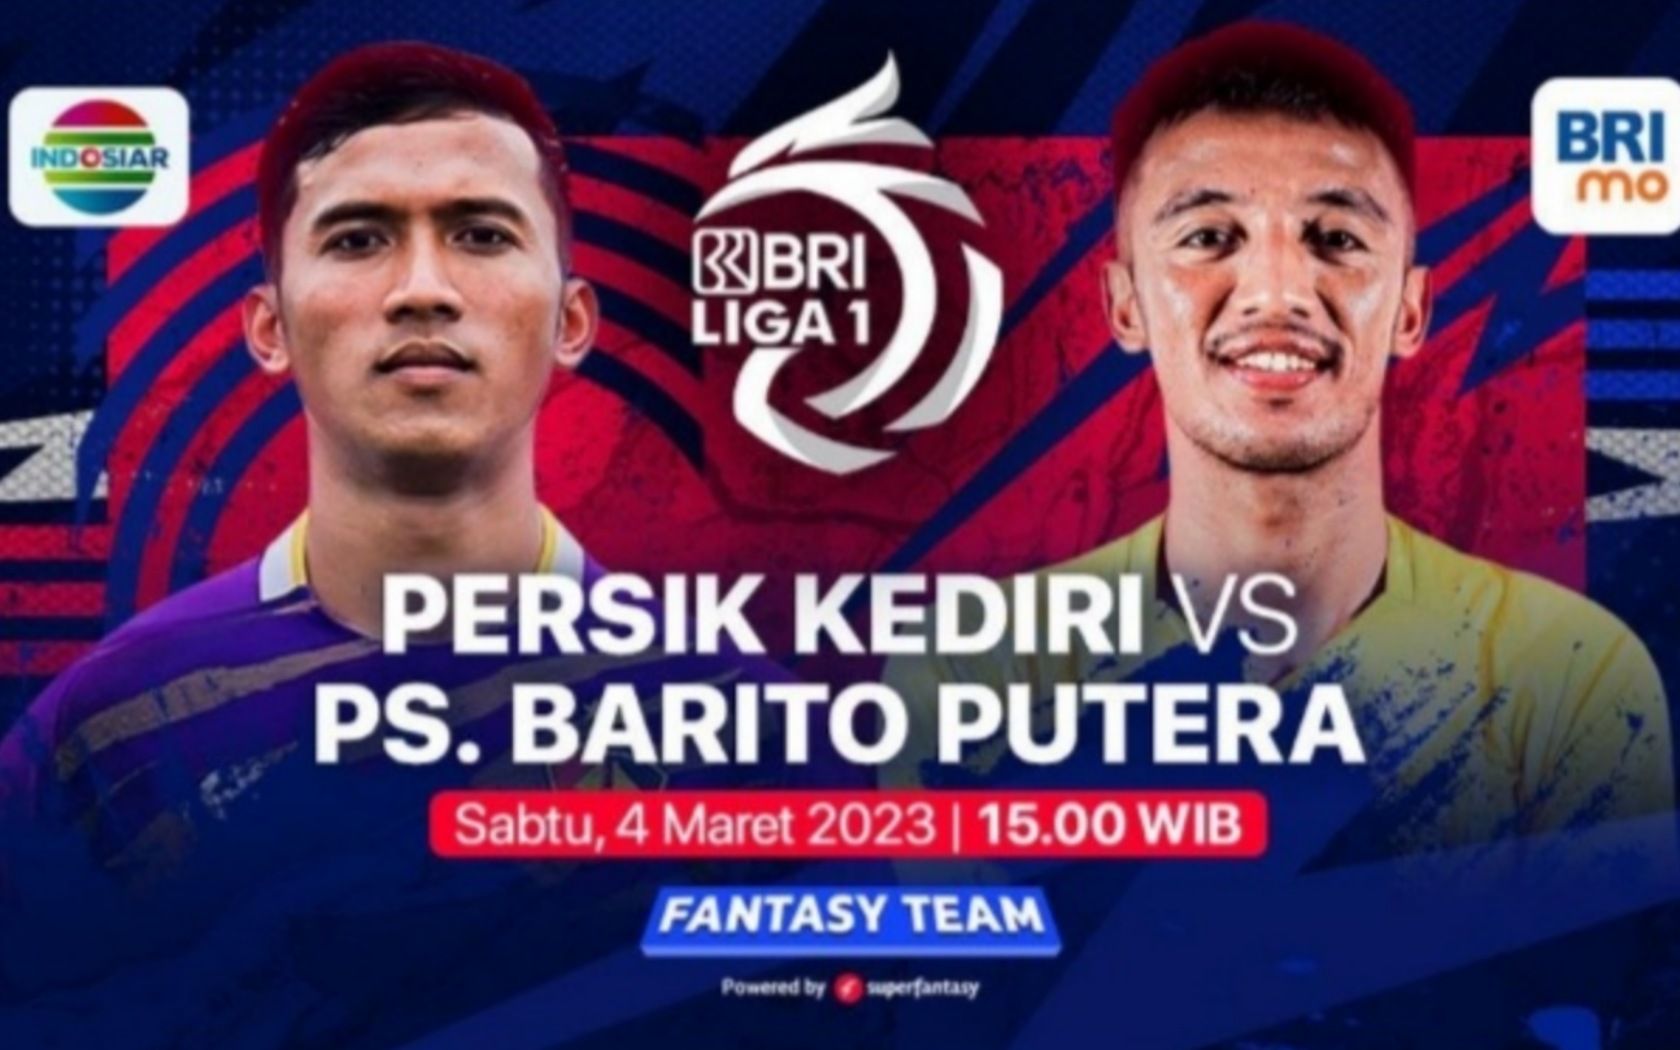 Prediksi formasi susunan pemain Persik Kediri vs Barito Putera pertandingan BRI Liga 1 pekan ke-28